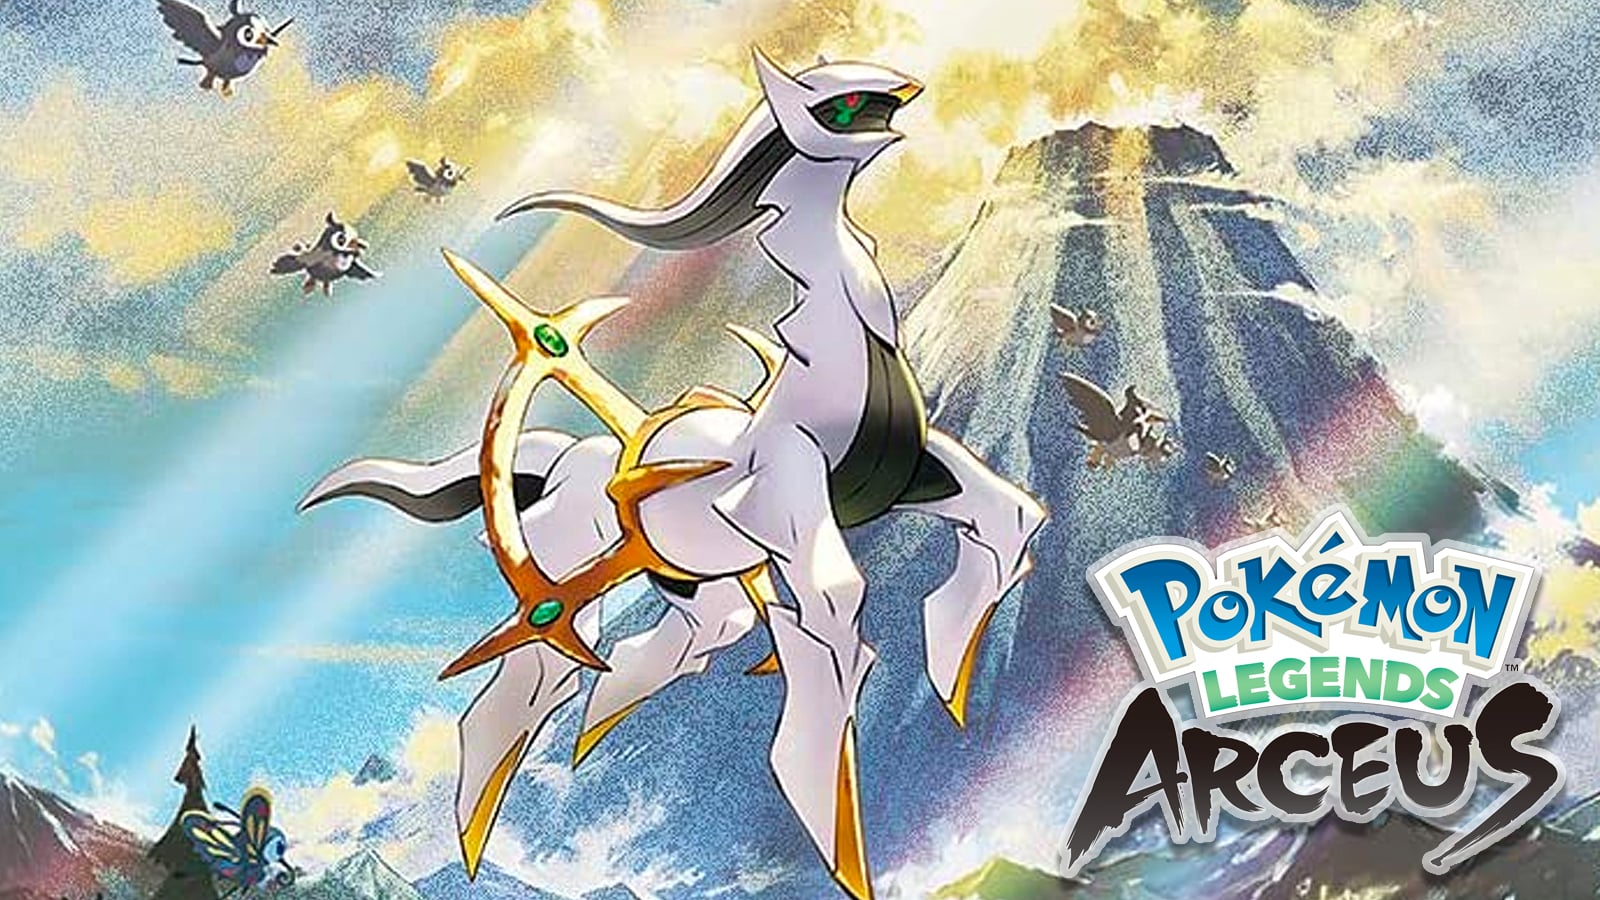 Pokémon Legends Arceus — Где найти все пластины, гайд по дополнительным миссиям